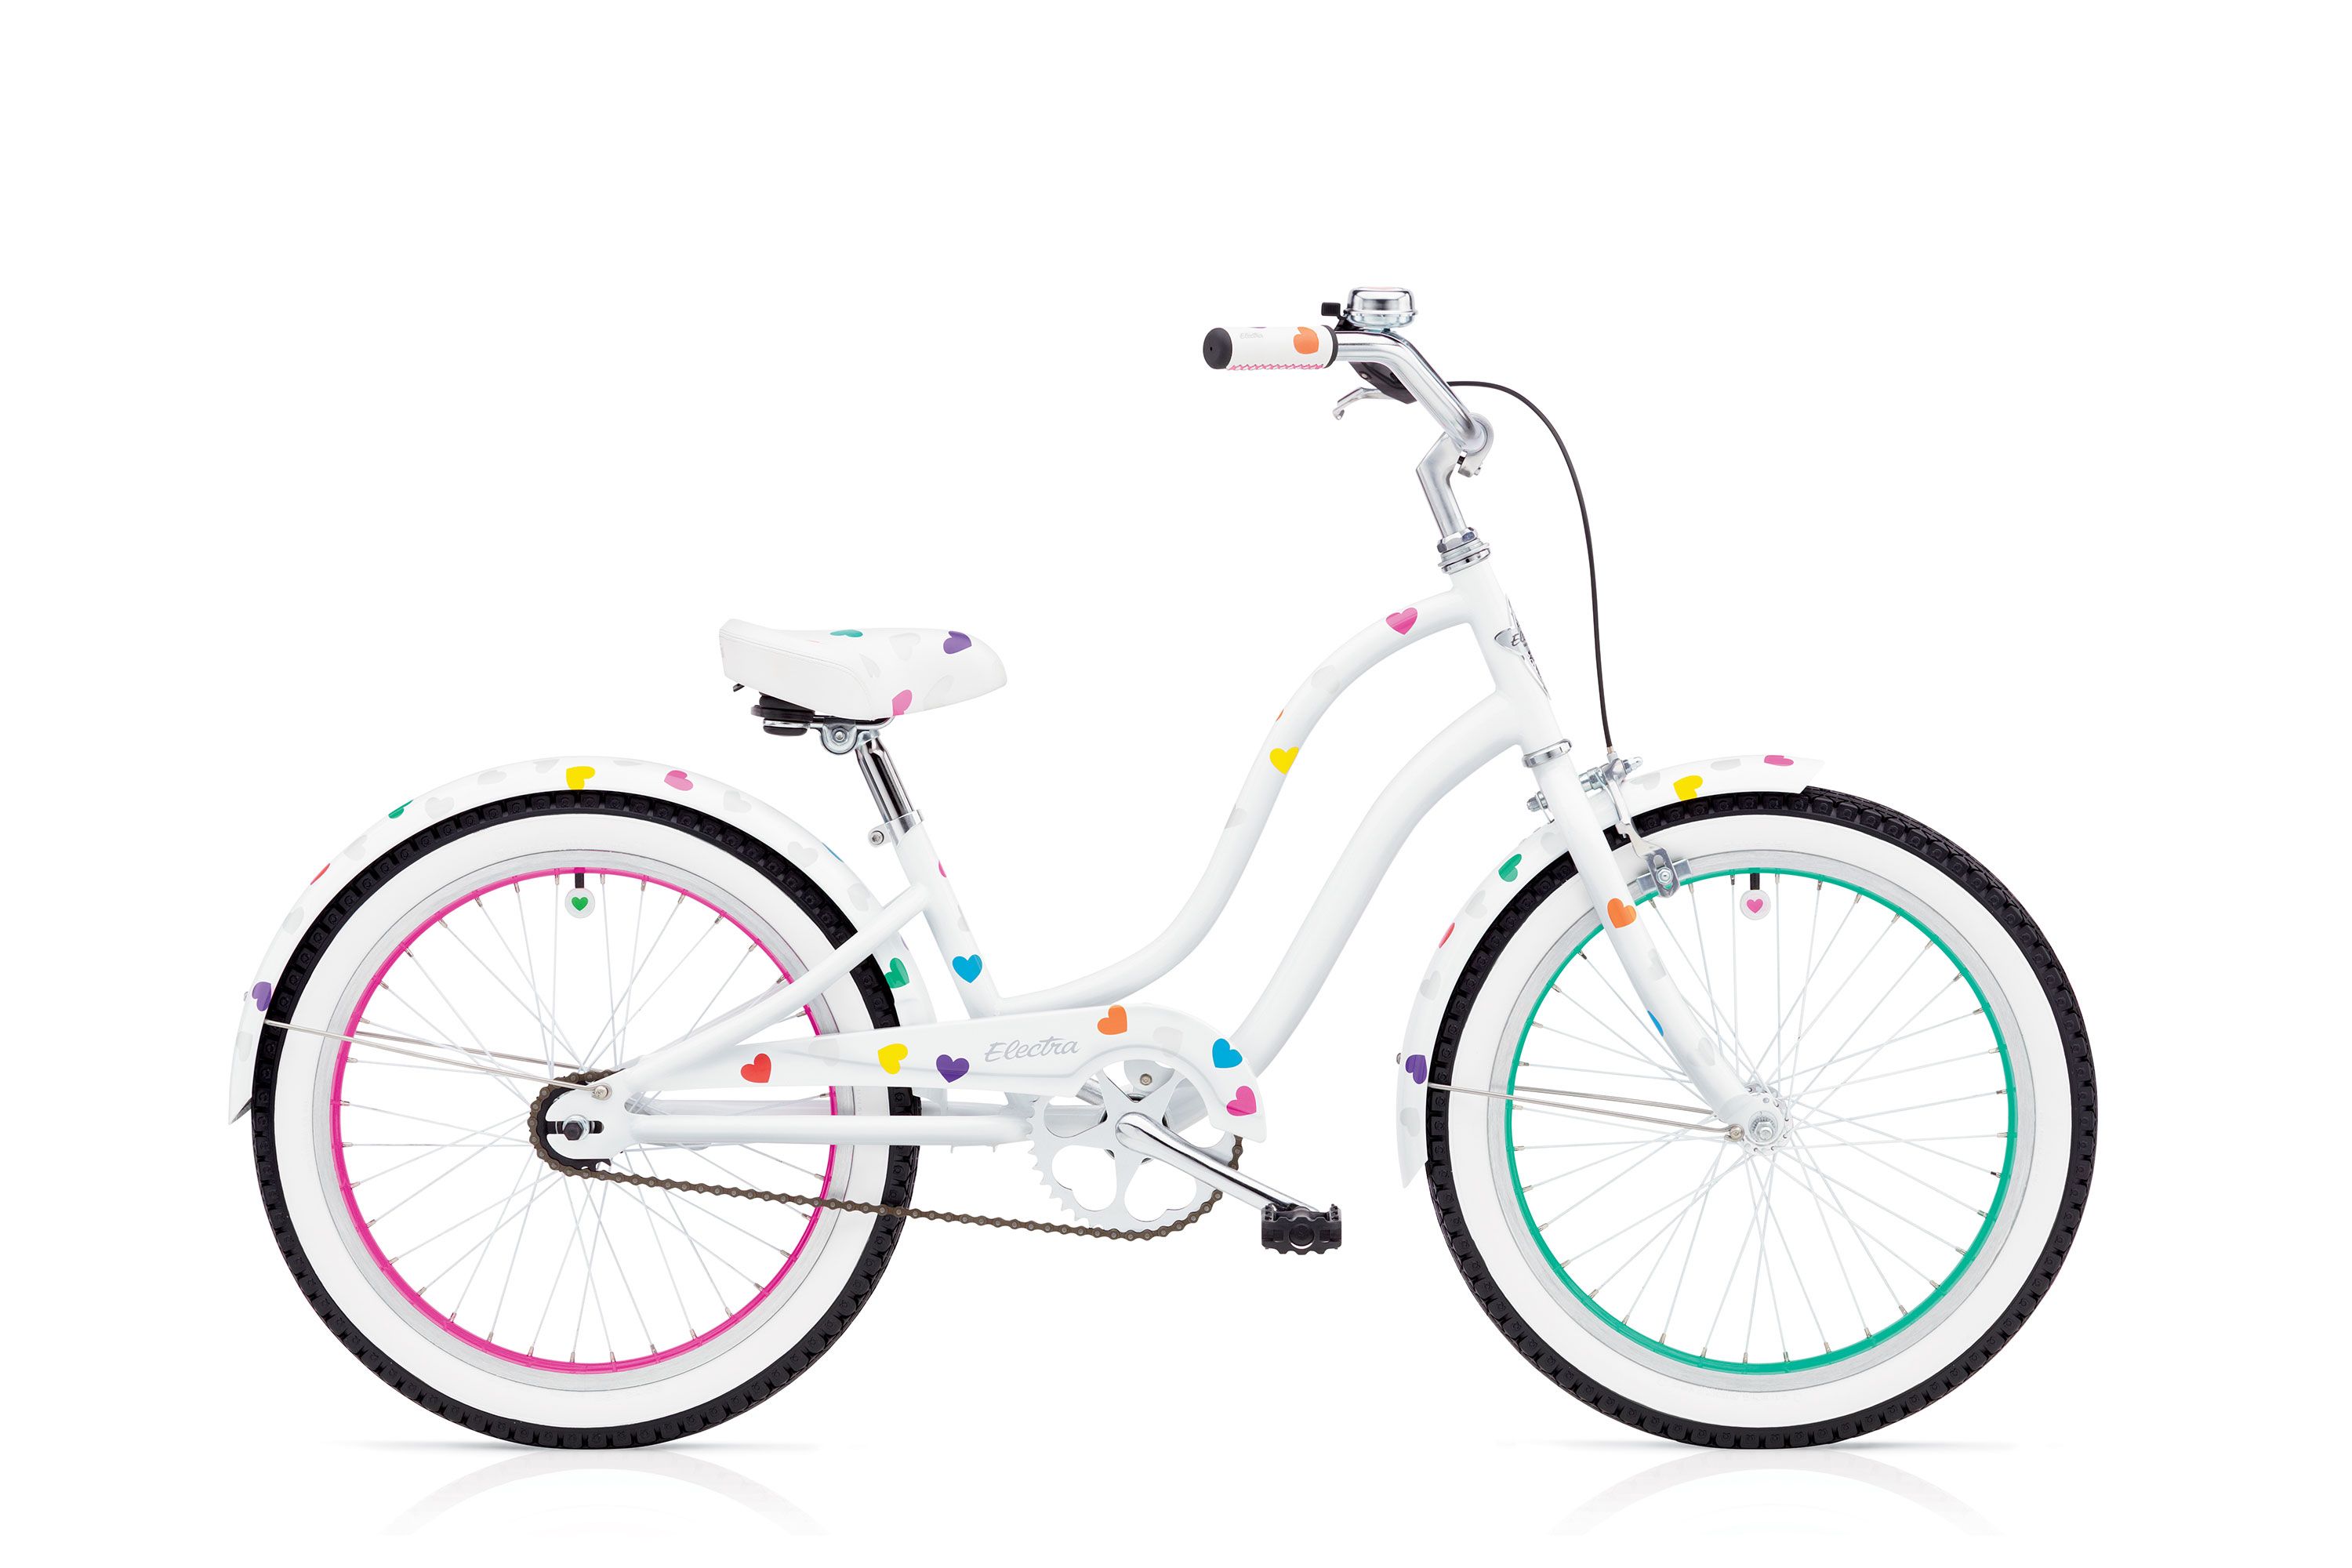  Отзывы о Детском велосипеде Electra Heartchya 3i Girls 20 2017